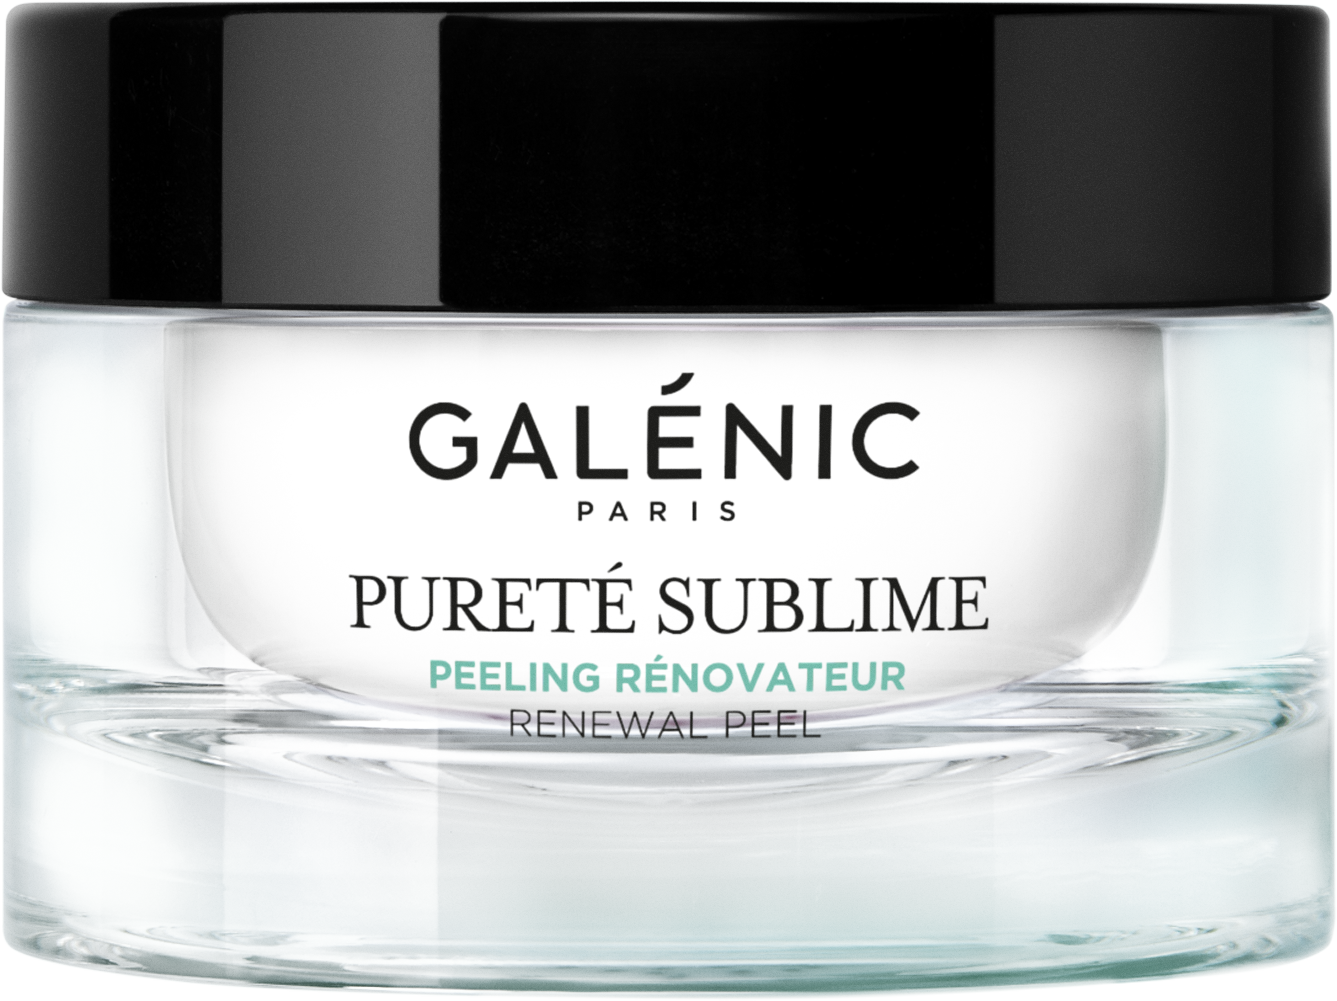 Galénic Pureté Sublime Renewal Peel 50ml (1.69fl oz)